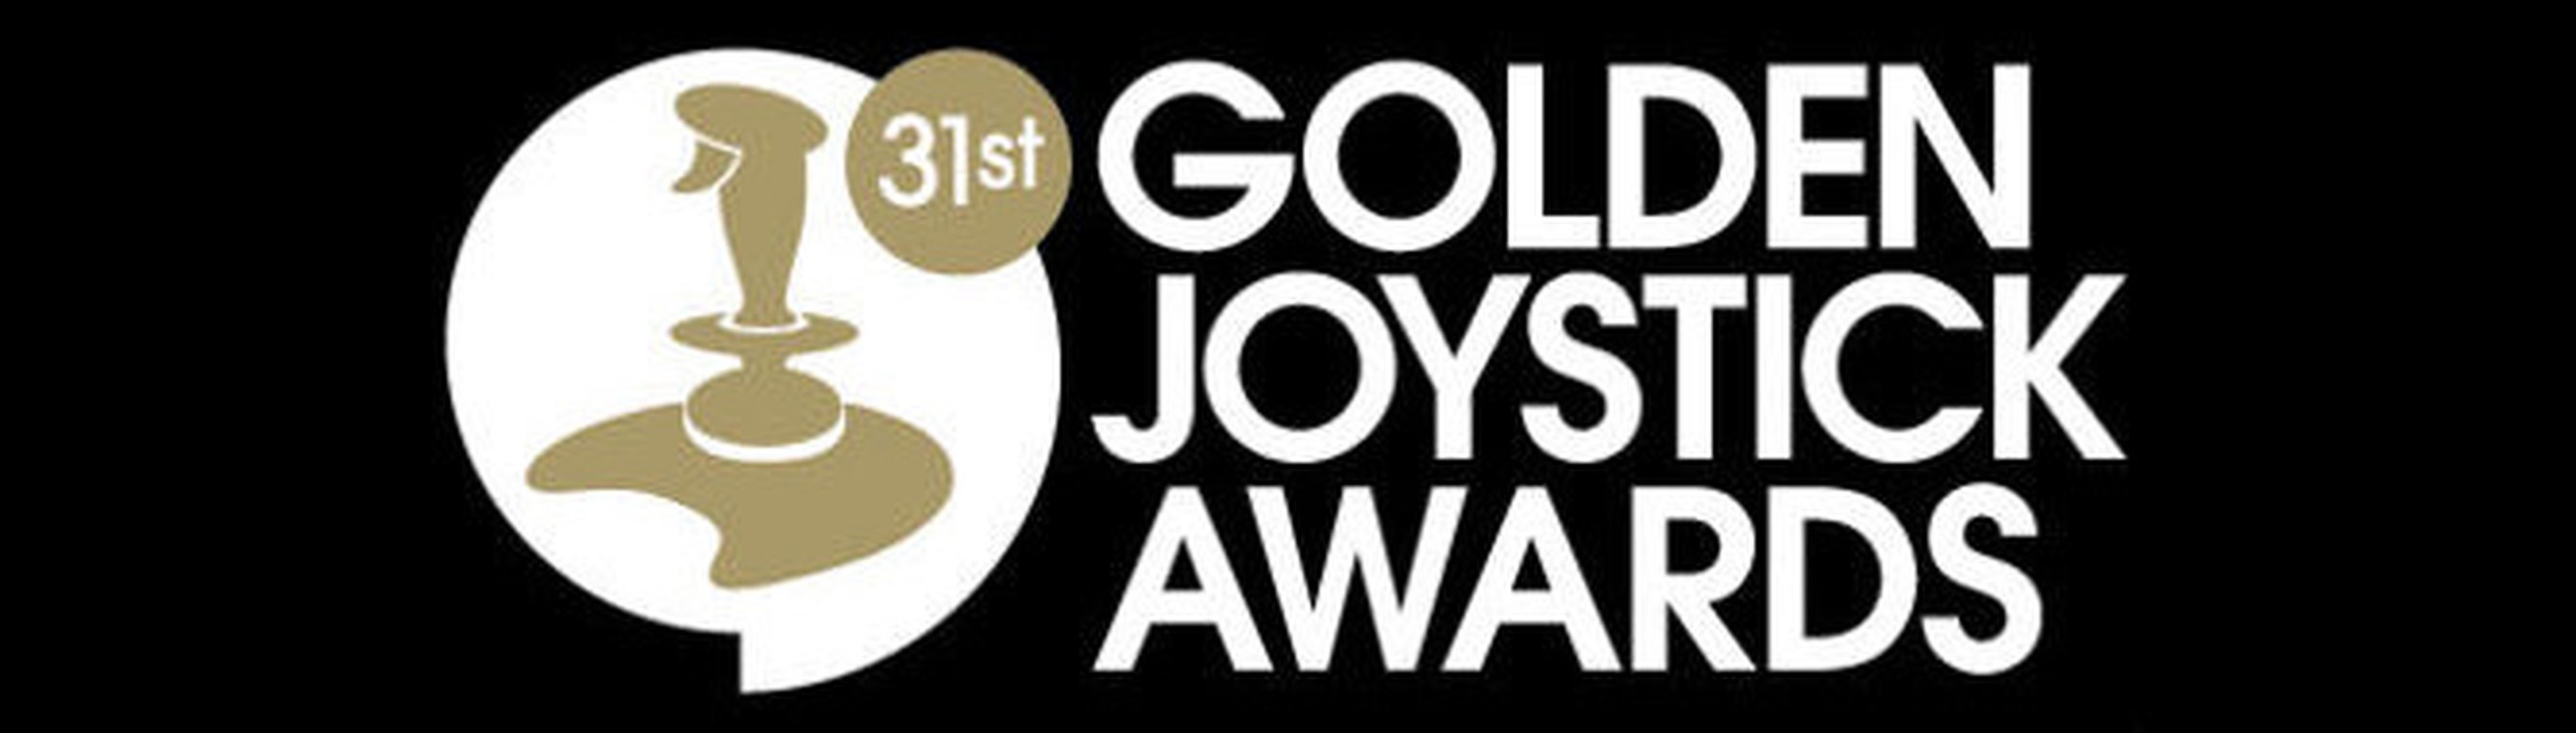 Lista de nominados a los Golden Joystick 2013 Awards